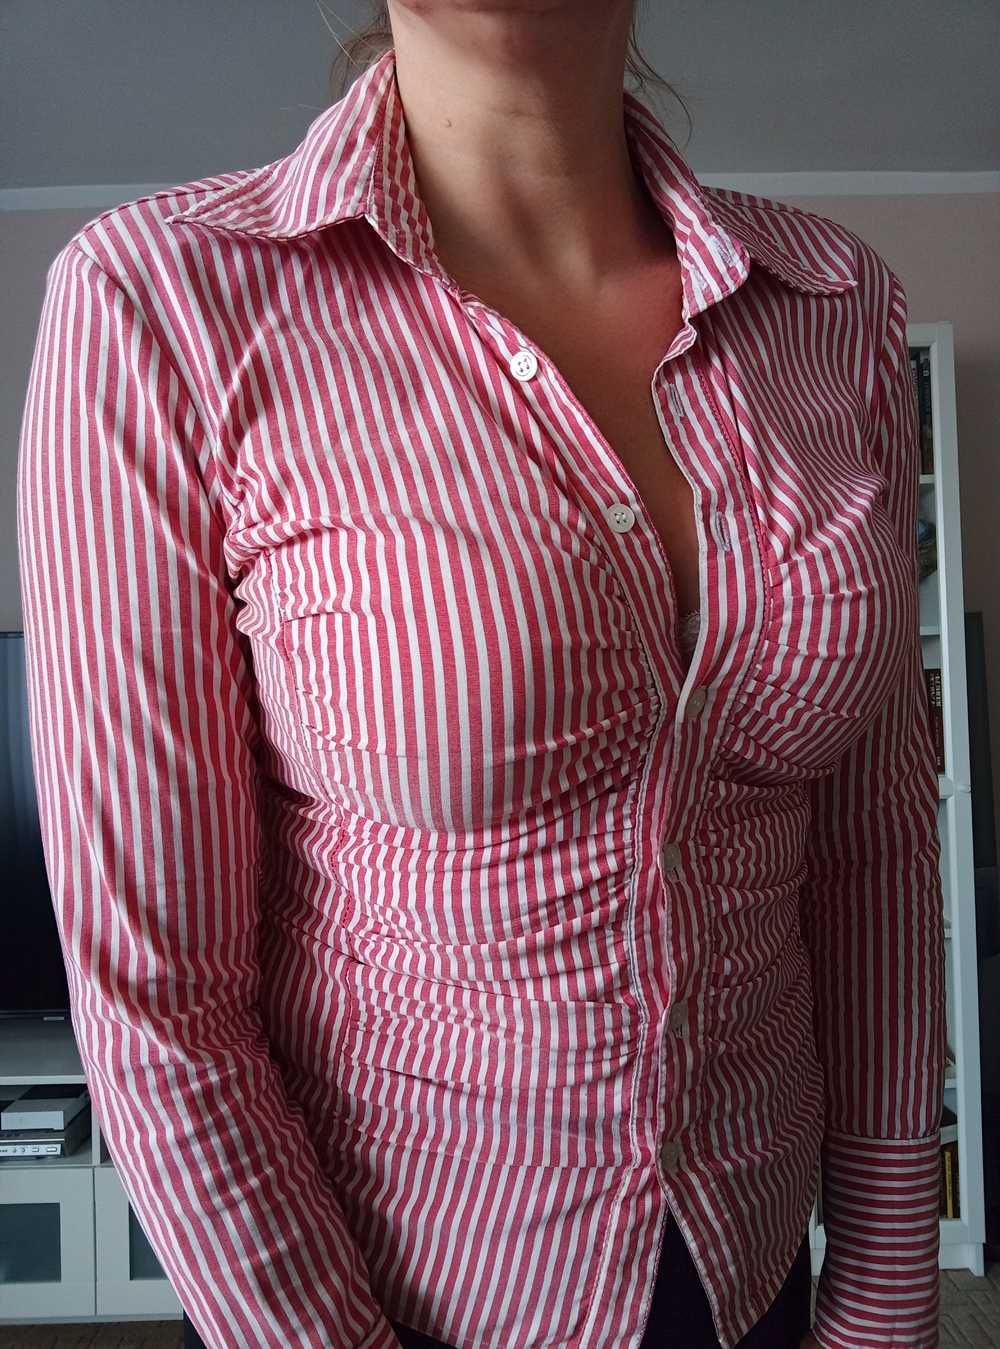 Biało czerwone paski koszula bluzka kobieca roz. L/40 Vero moda